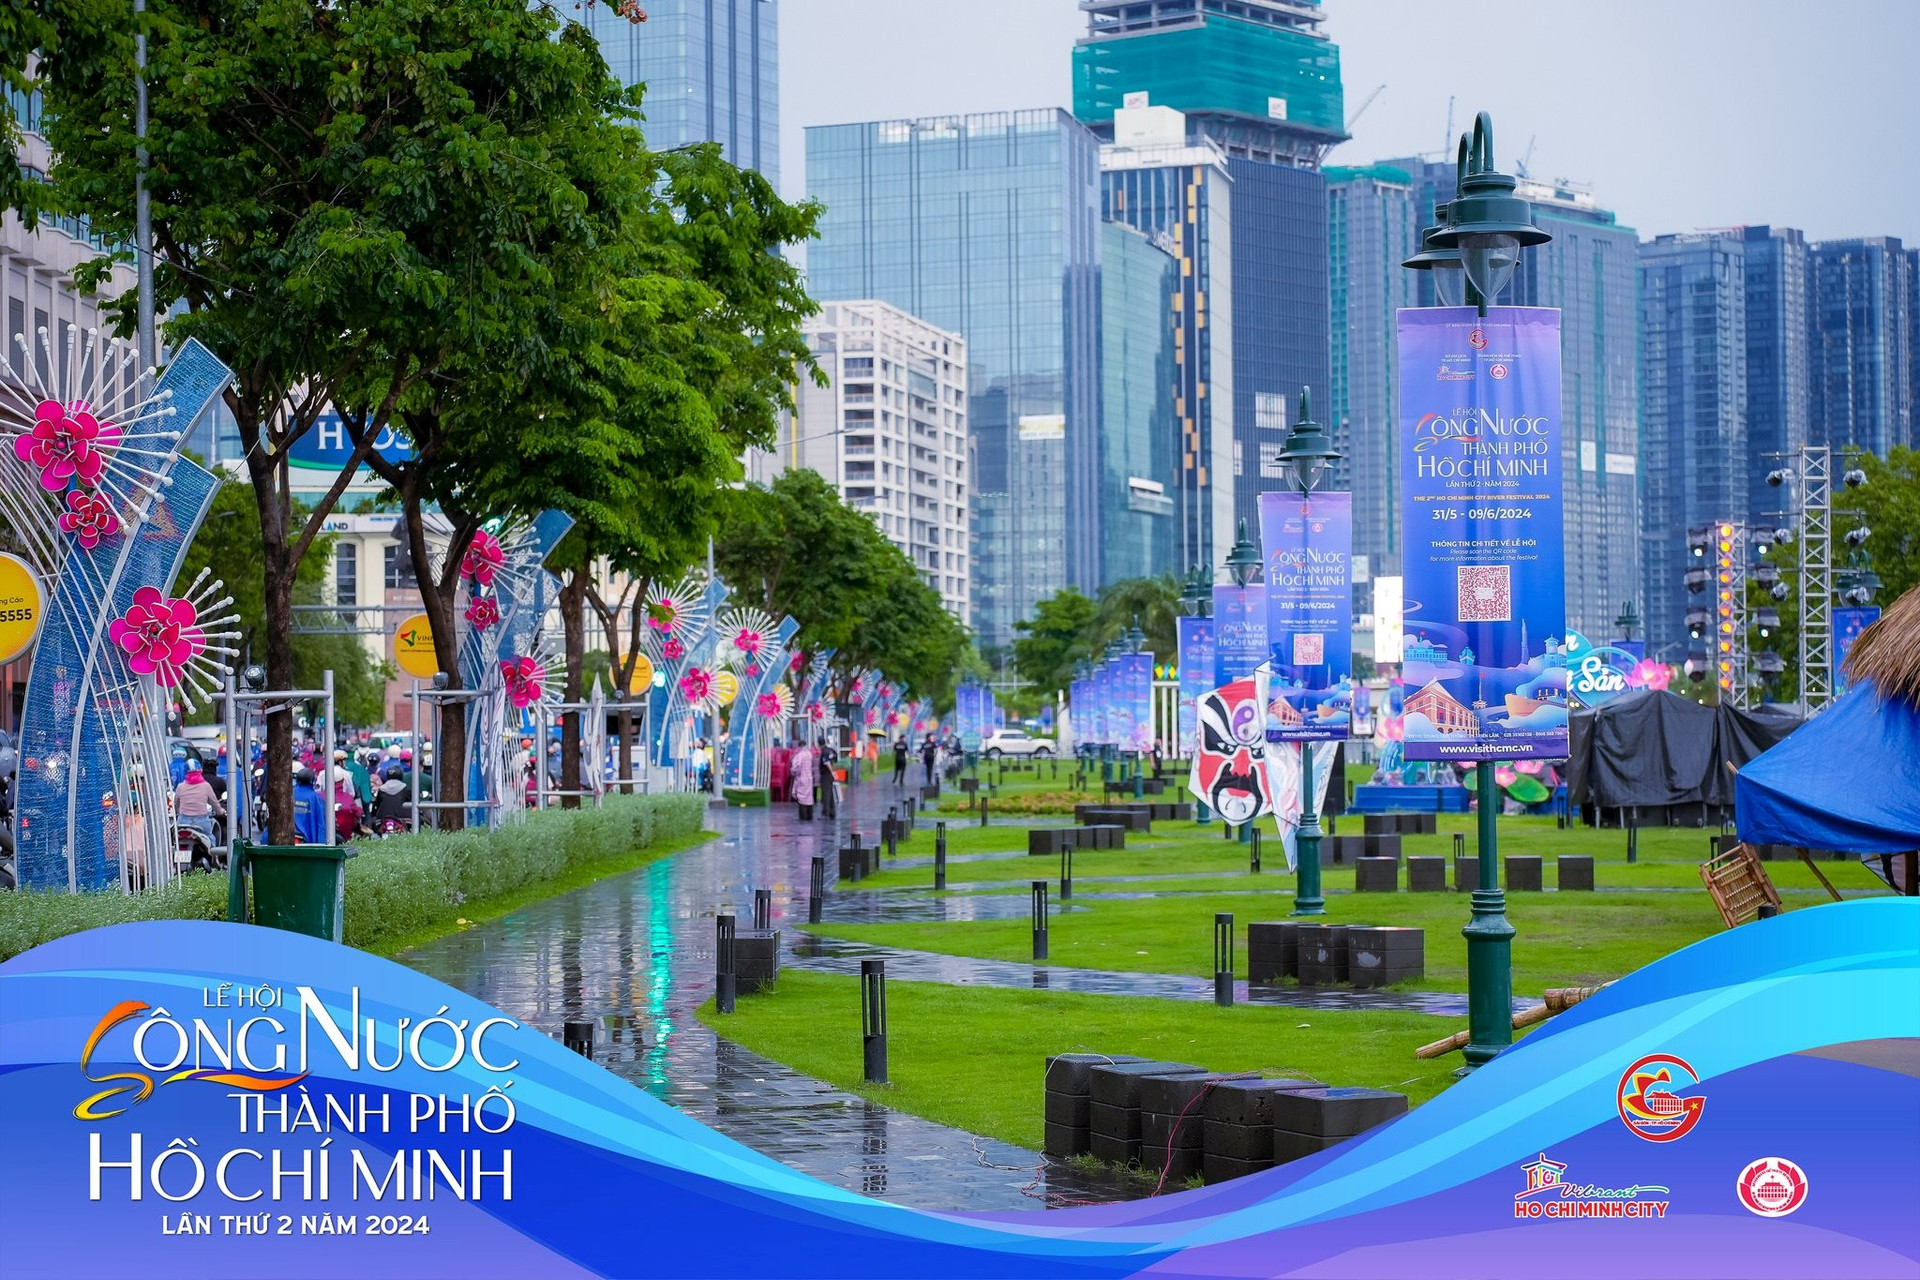 Hình ảnh đẹp mắt tại Công viên Bến Bạch Đằng trong những ngày diễn ra Lễ hội sông nước thành phố Hồ Chí Minh. Ảnh: BTC